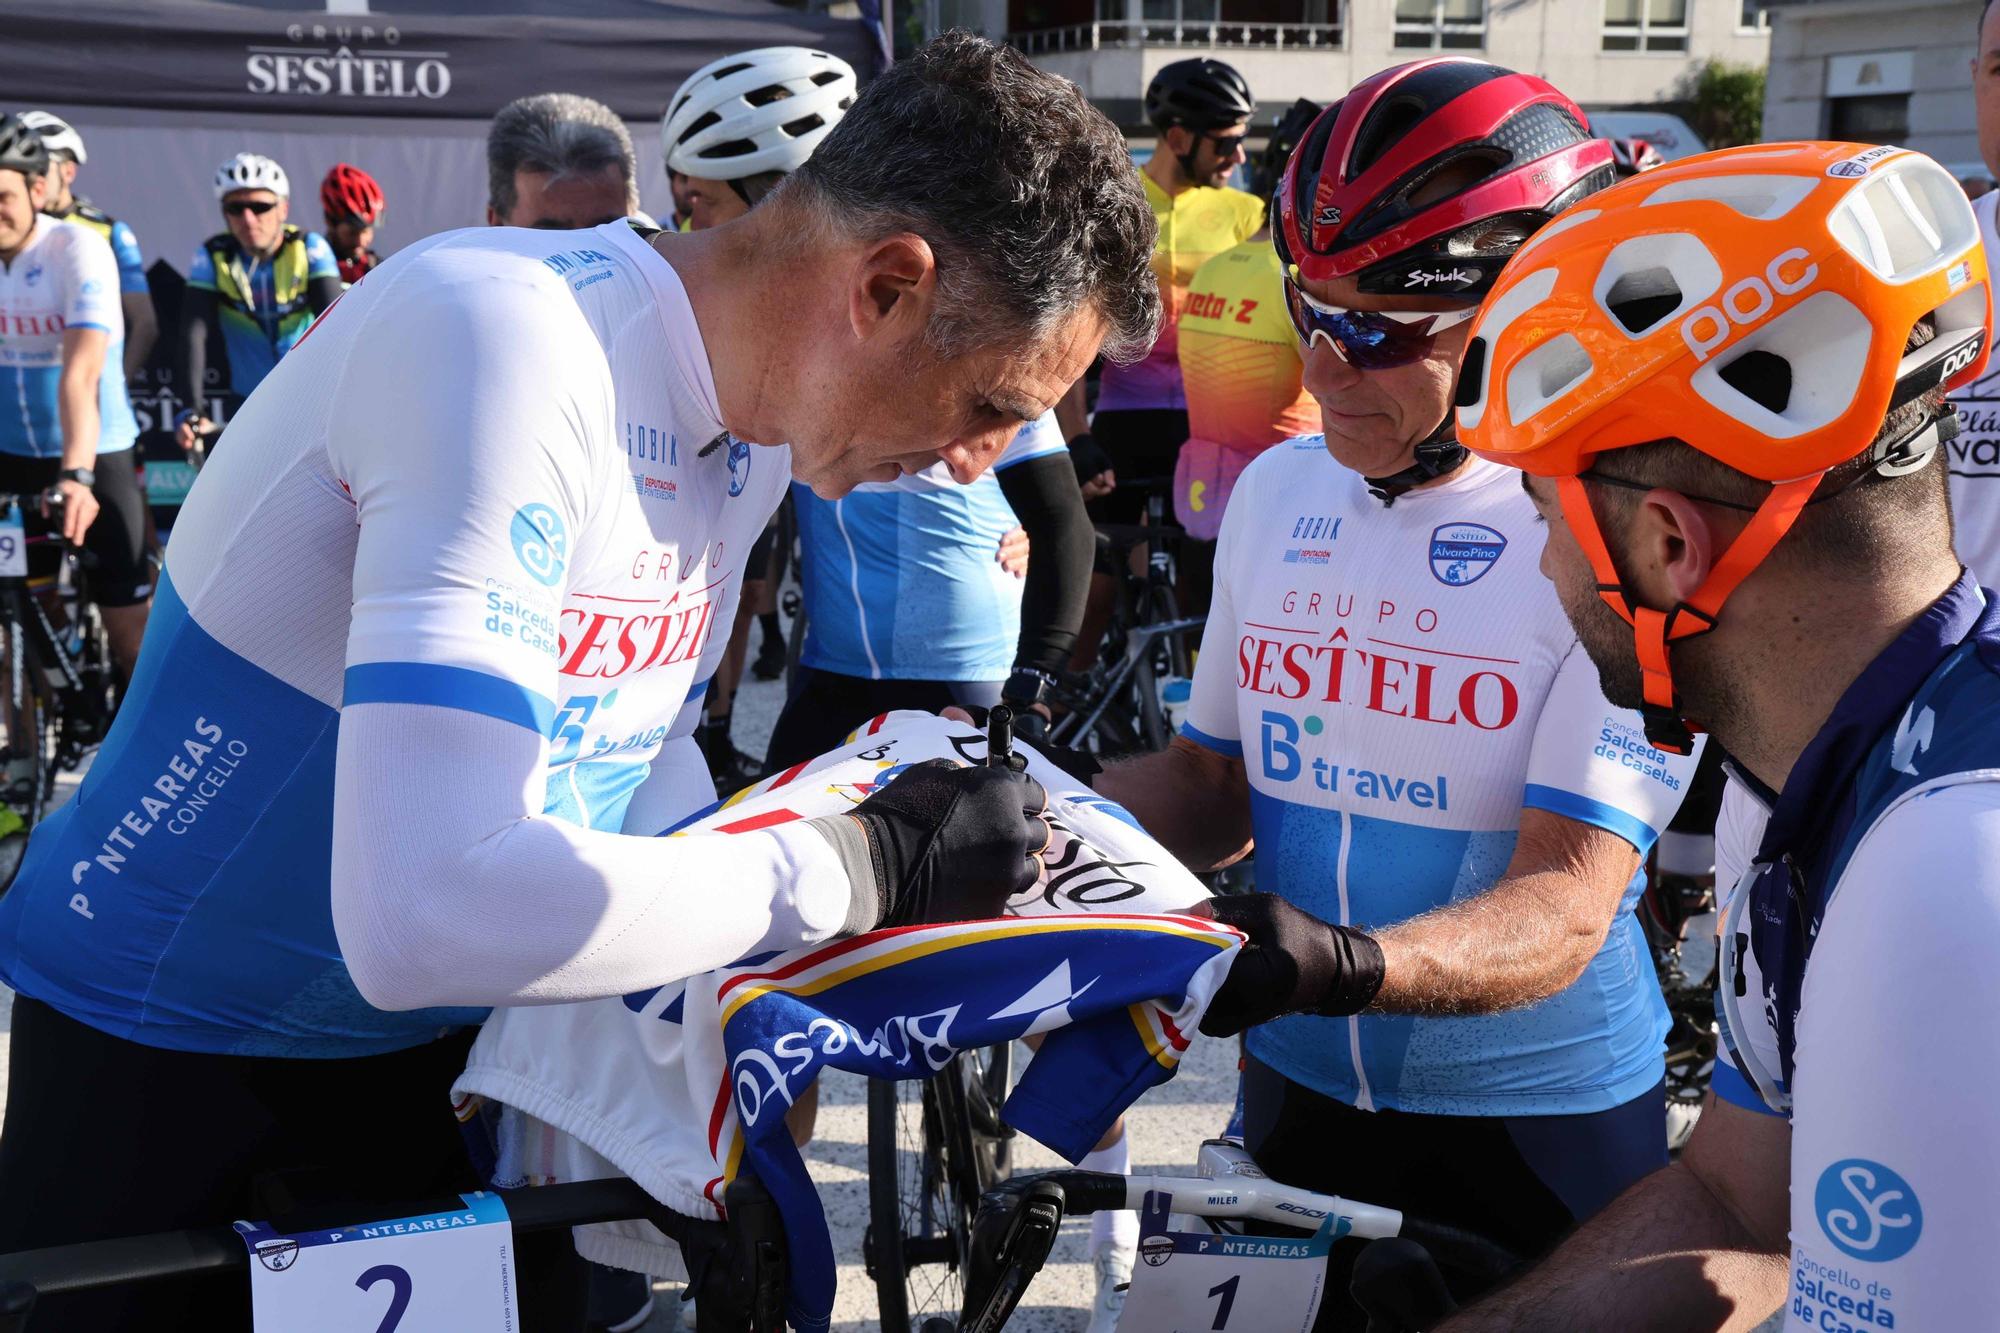 Induráin y Álvaro Pino 'lideran' el pelotón ciclista en Paradanta